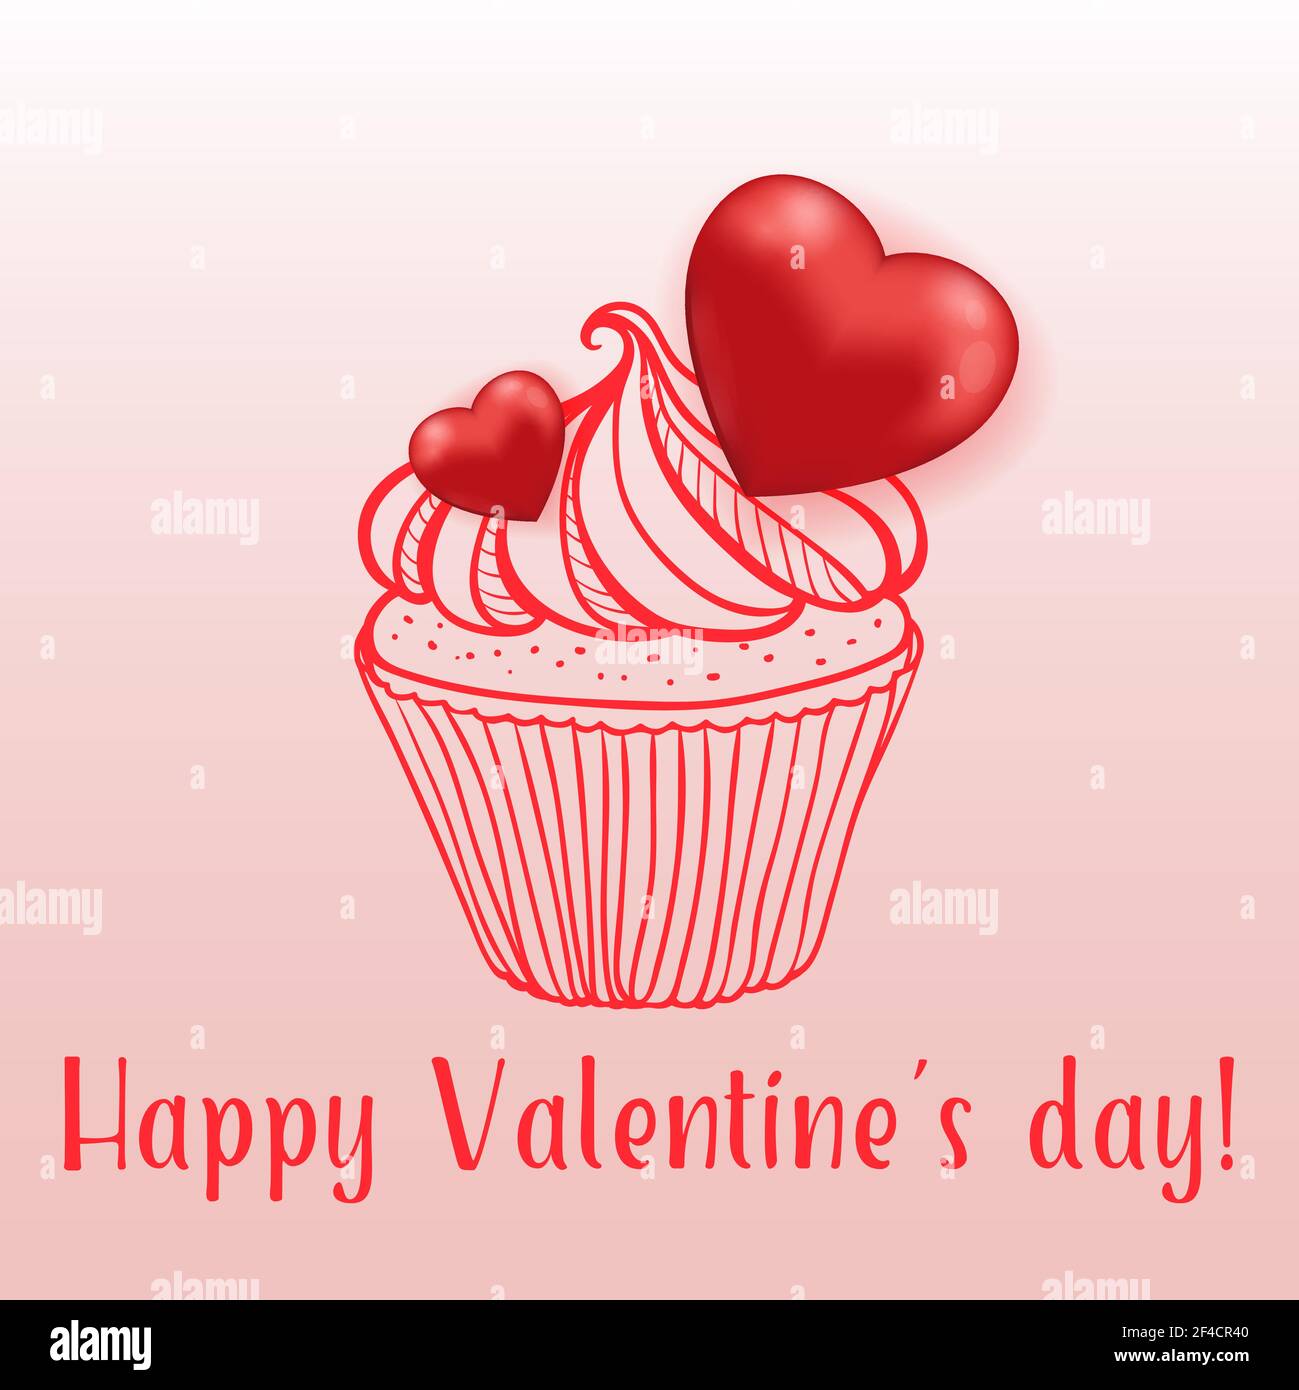 Pastel dulce con corazones rojos sobre fondo rosa. Tarjeta de felicitación para el día de San Valentín. Ilustración vectorial dibujada a mano. Ilustración del Vector